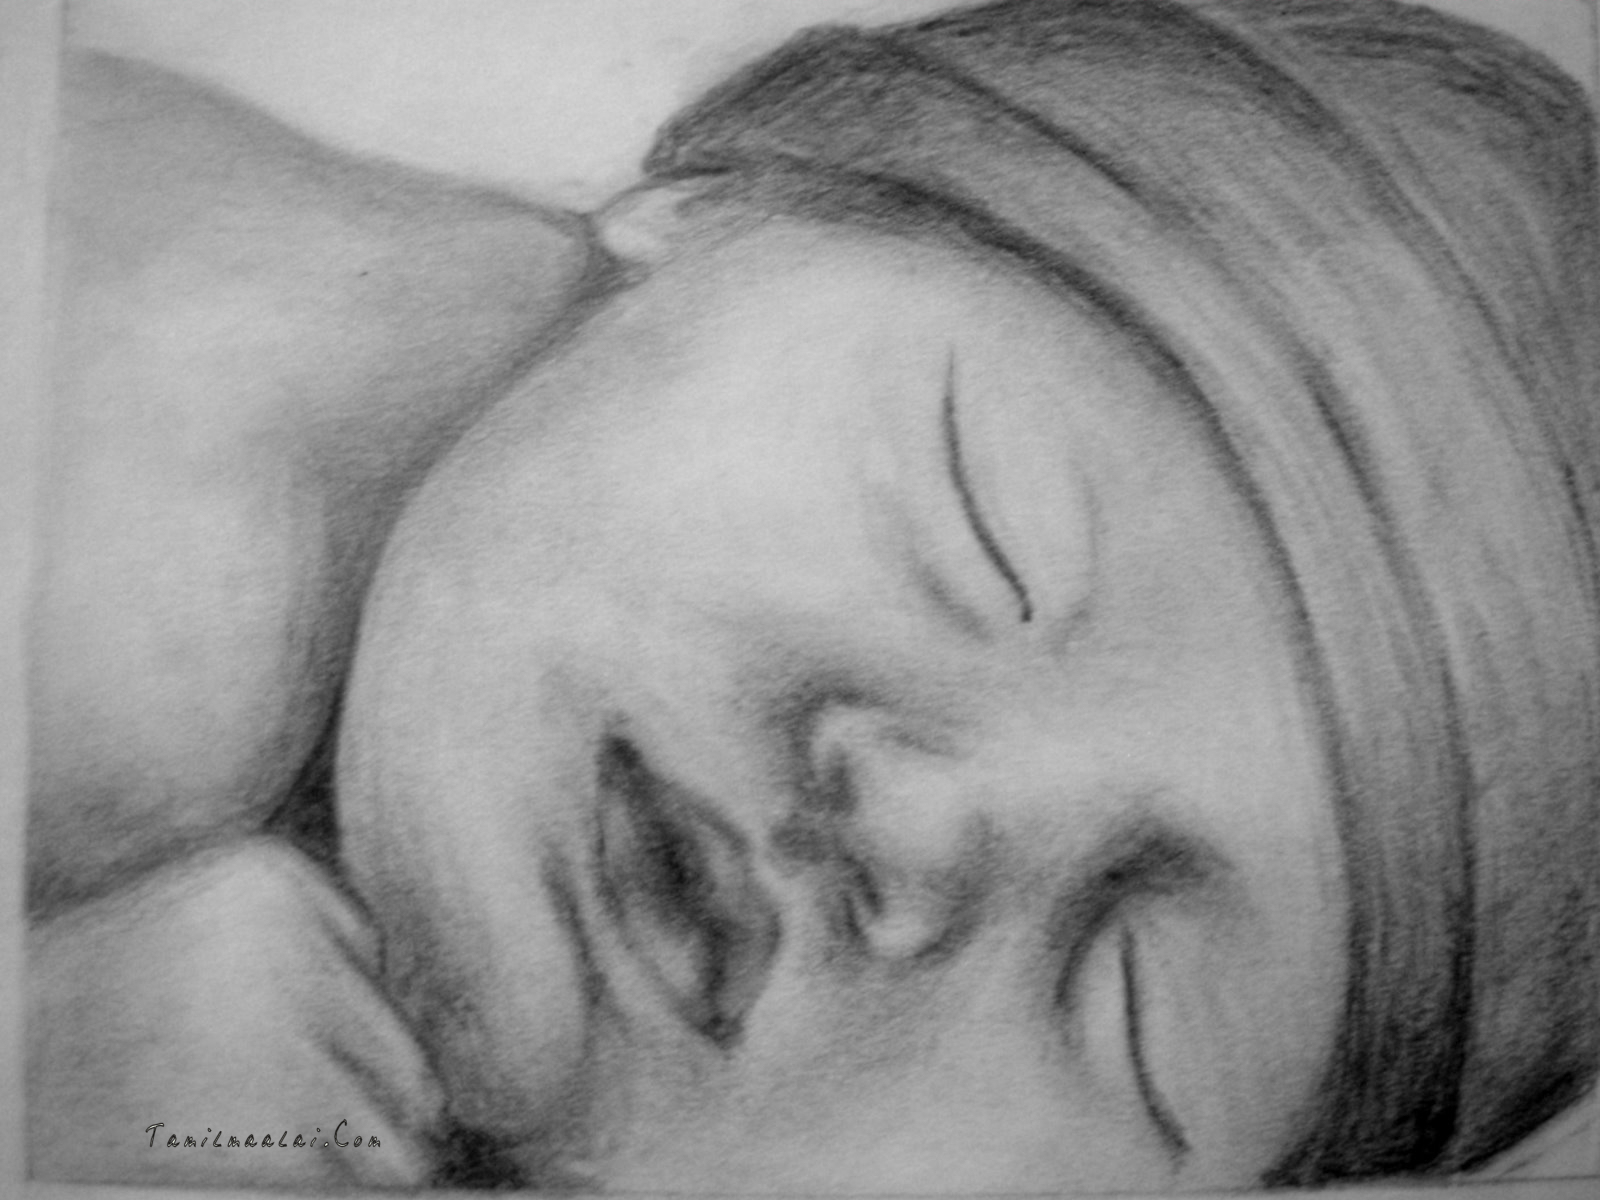 Pencil Drawings of Babies Sleeping - ImageLoad